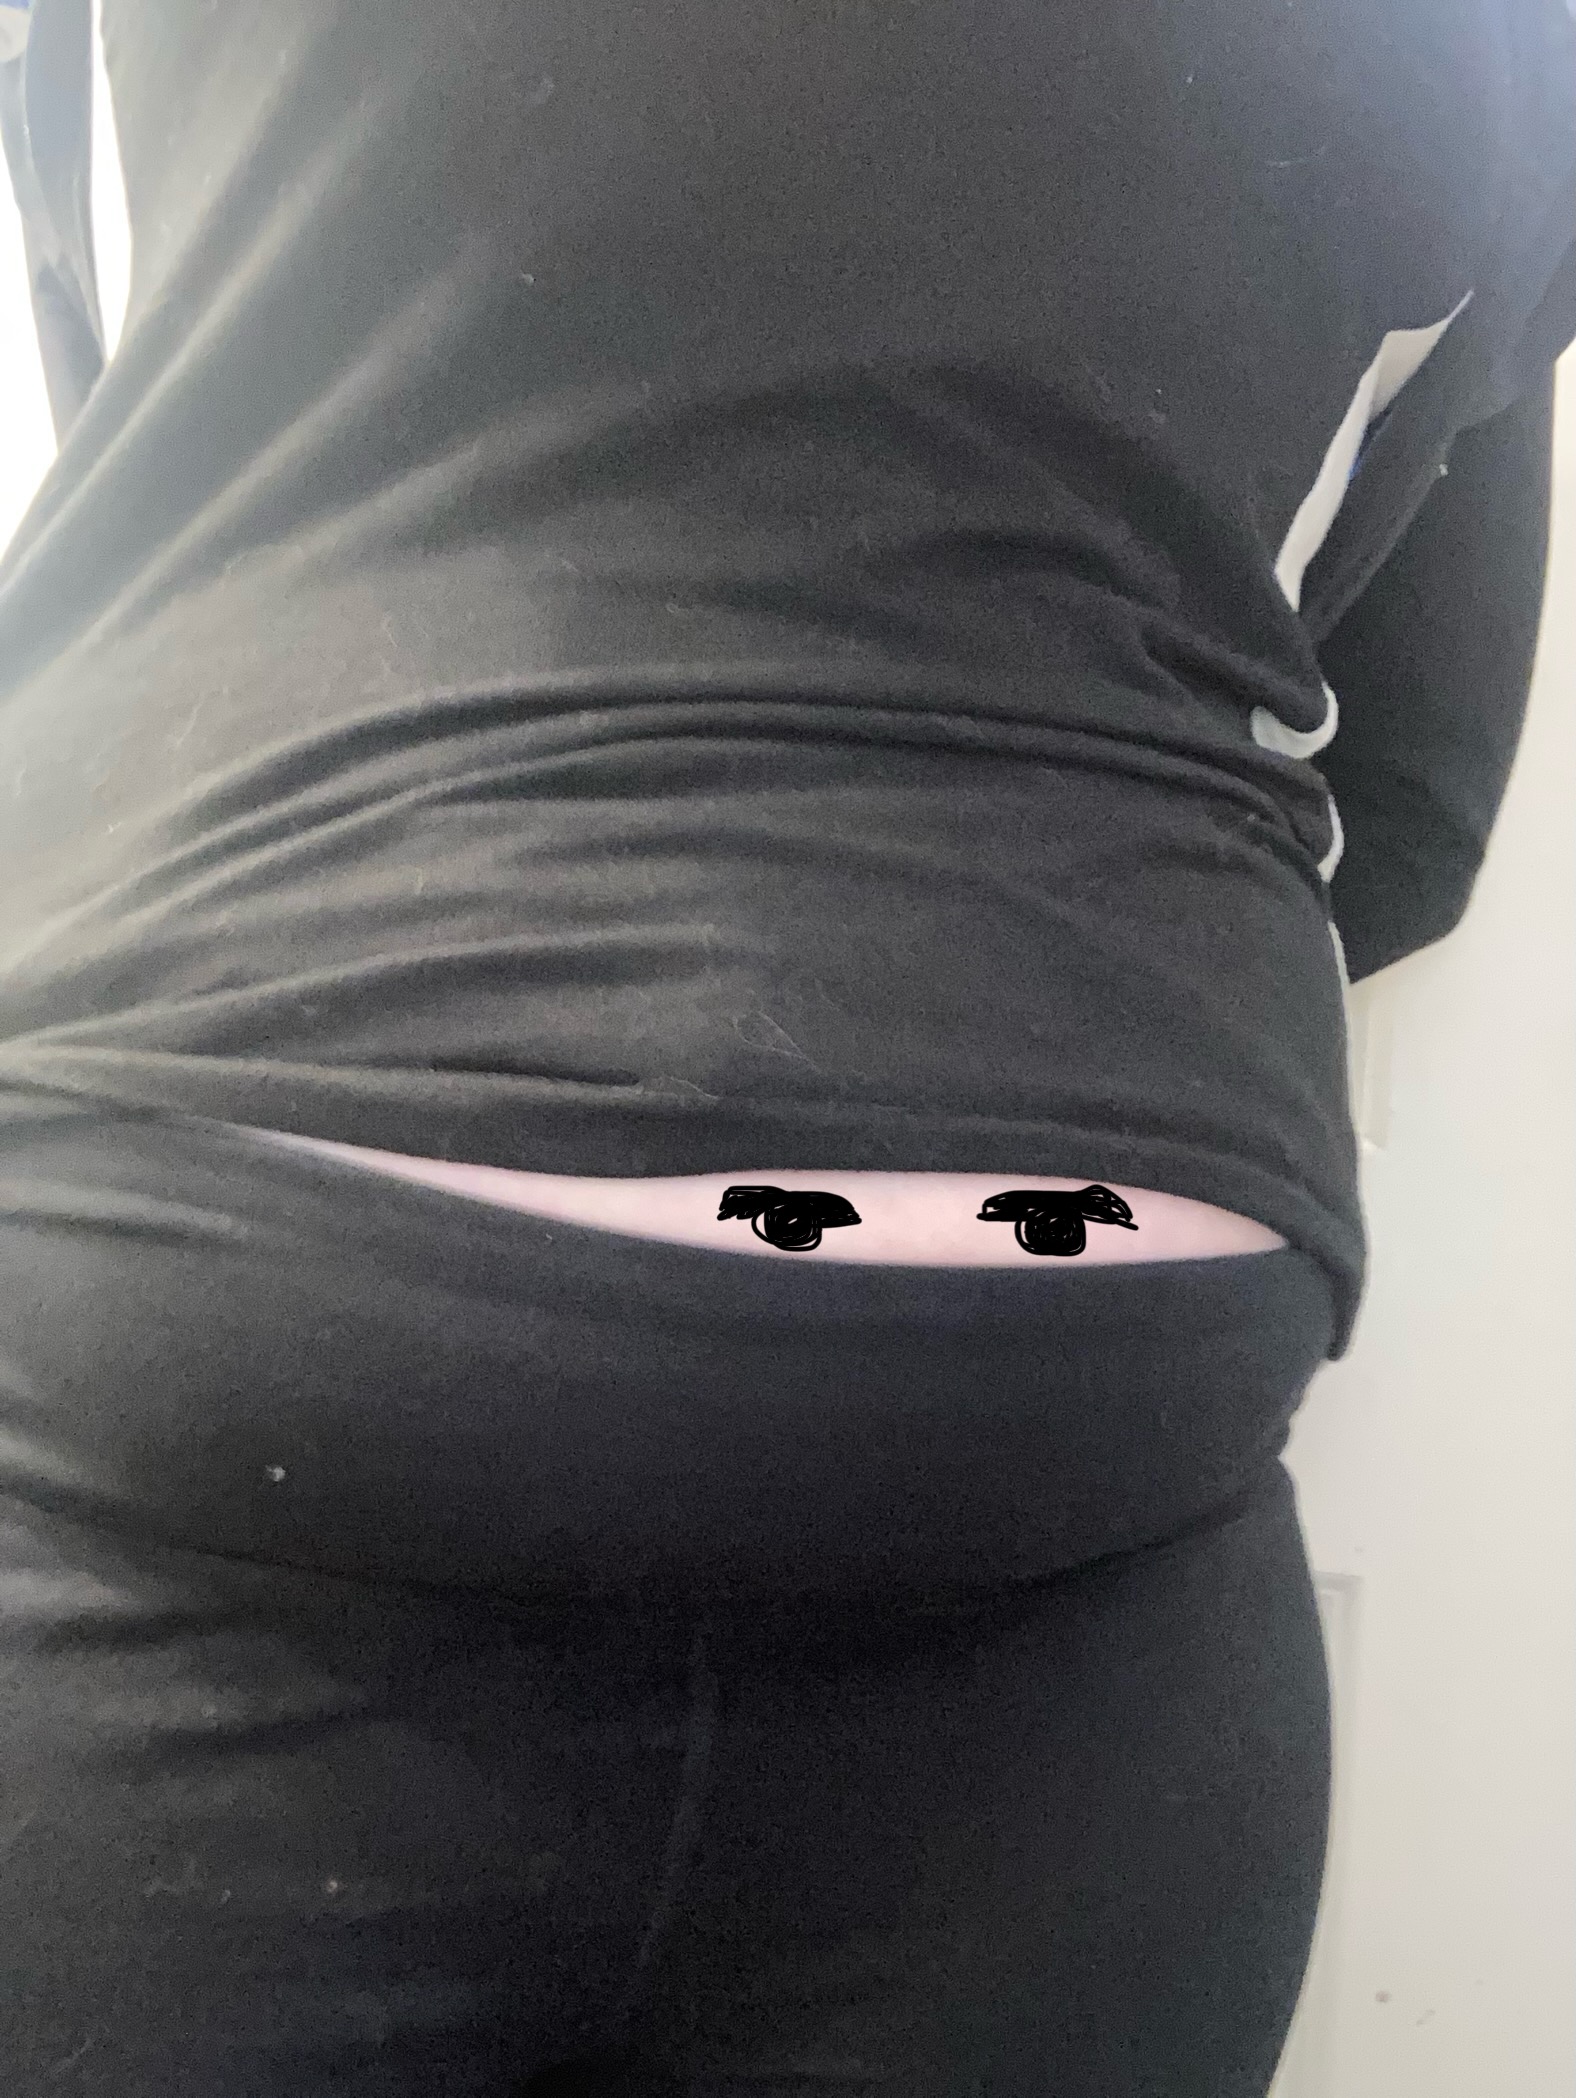 Belly fat ninja Blank Meme Template